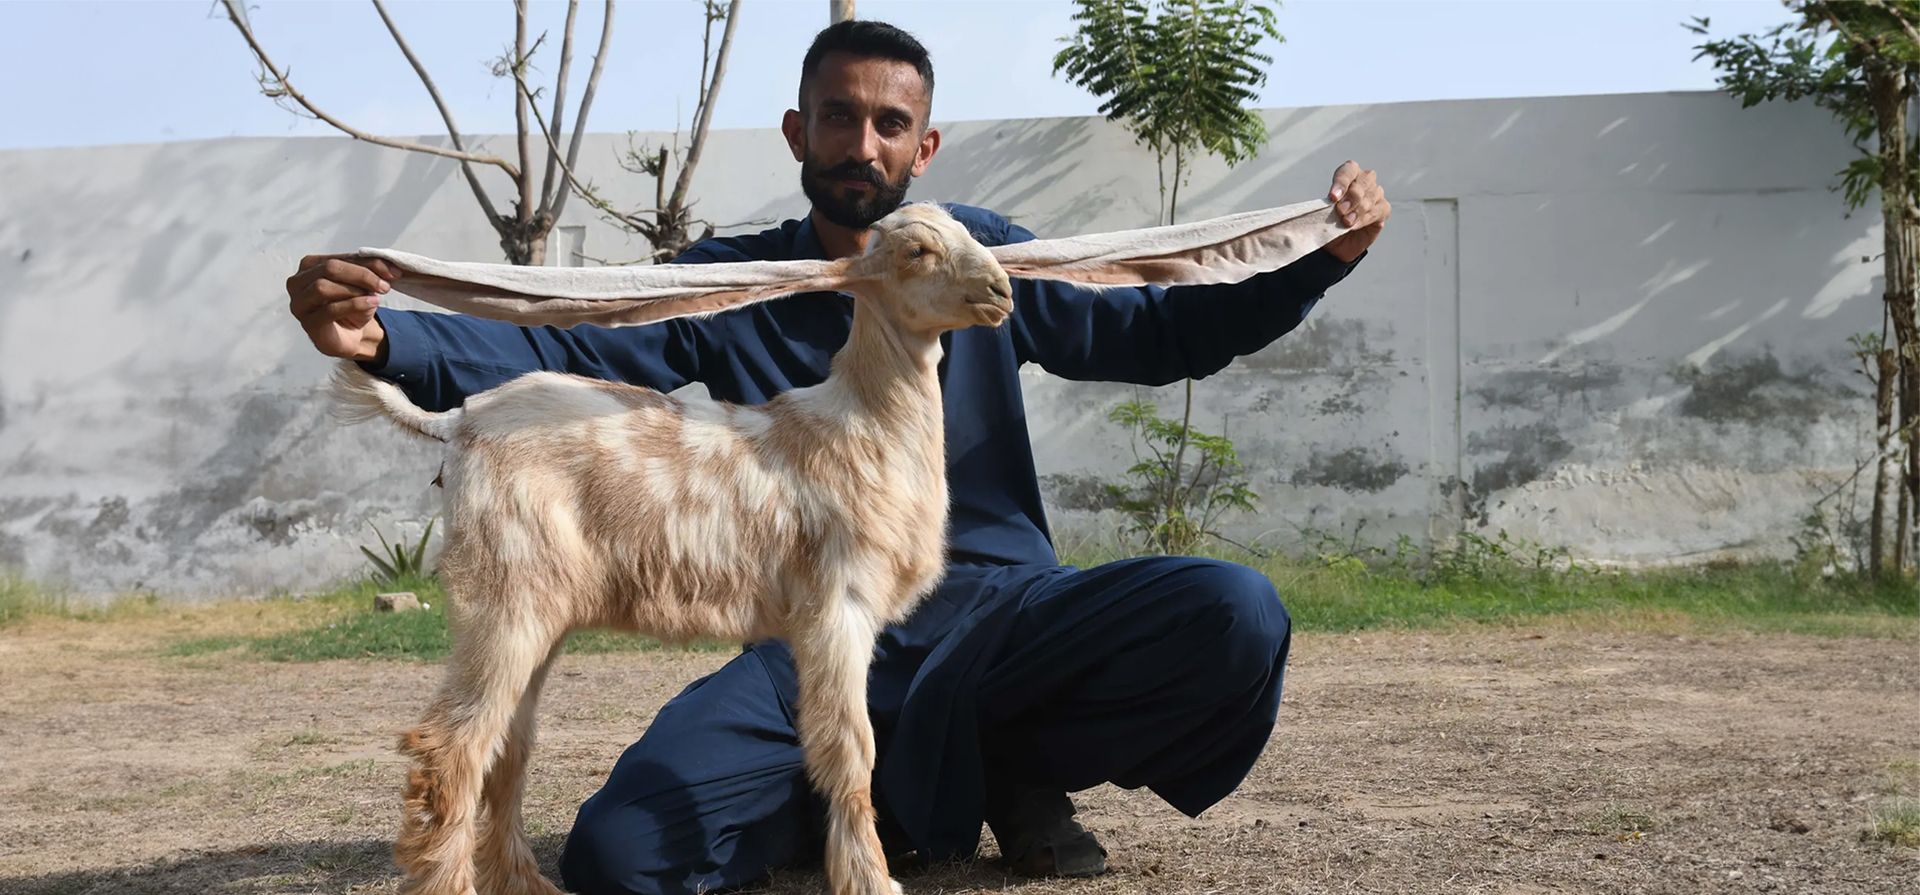 Karachi, Pakistán. Mohammad Hasan Narejo, un criador de cabras, muestra las orejas de una cabra hembra de dos meses llamada Simbi. Simbi tiene las orejas más largas del mundo, miden 55 cm. Fotografía: Agencia Anadolu/Getty Images